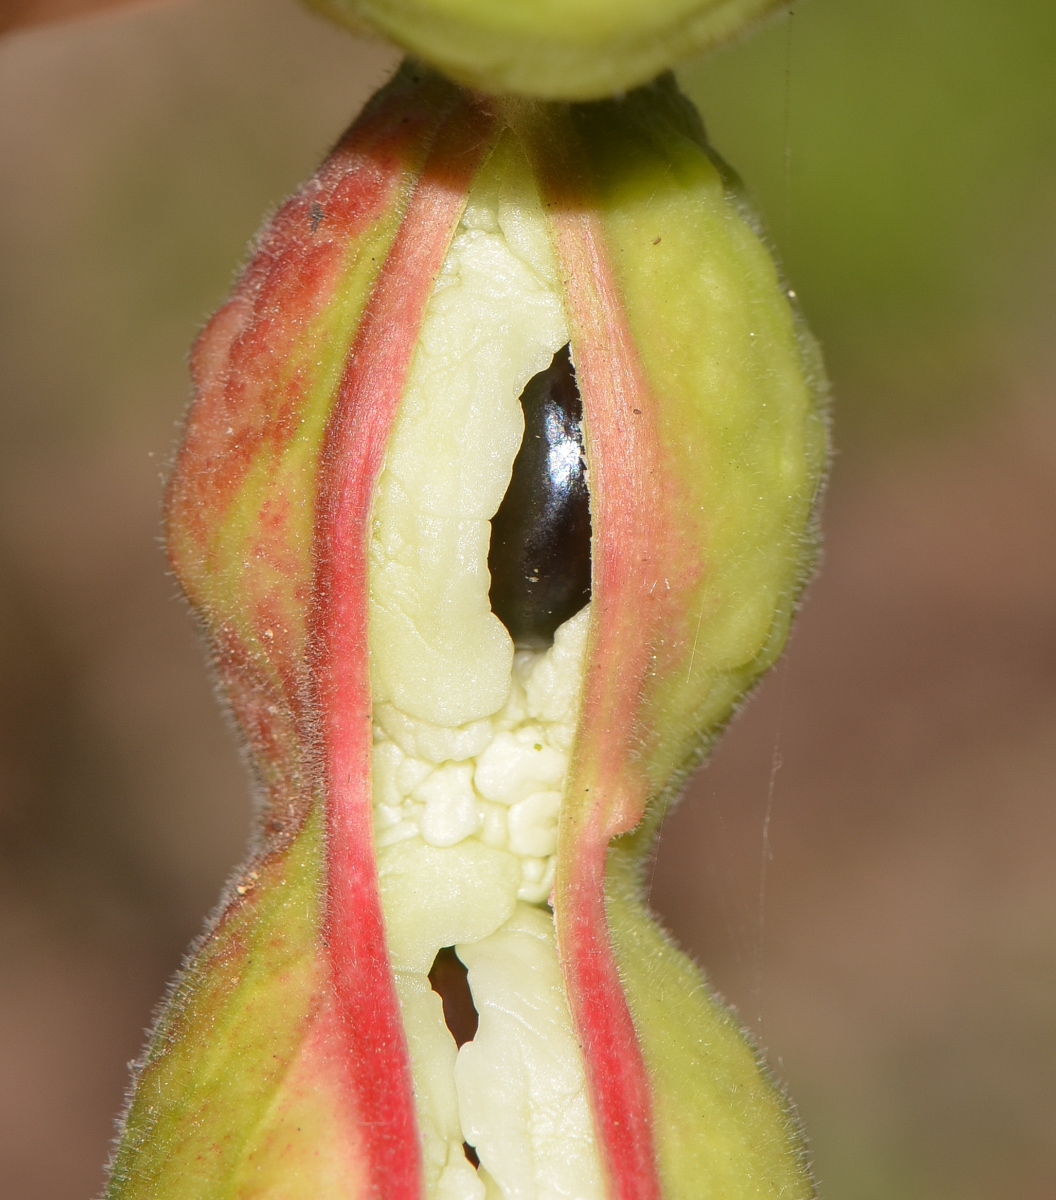 Image of Pithecellobium dulce specimen.